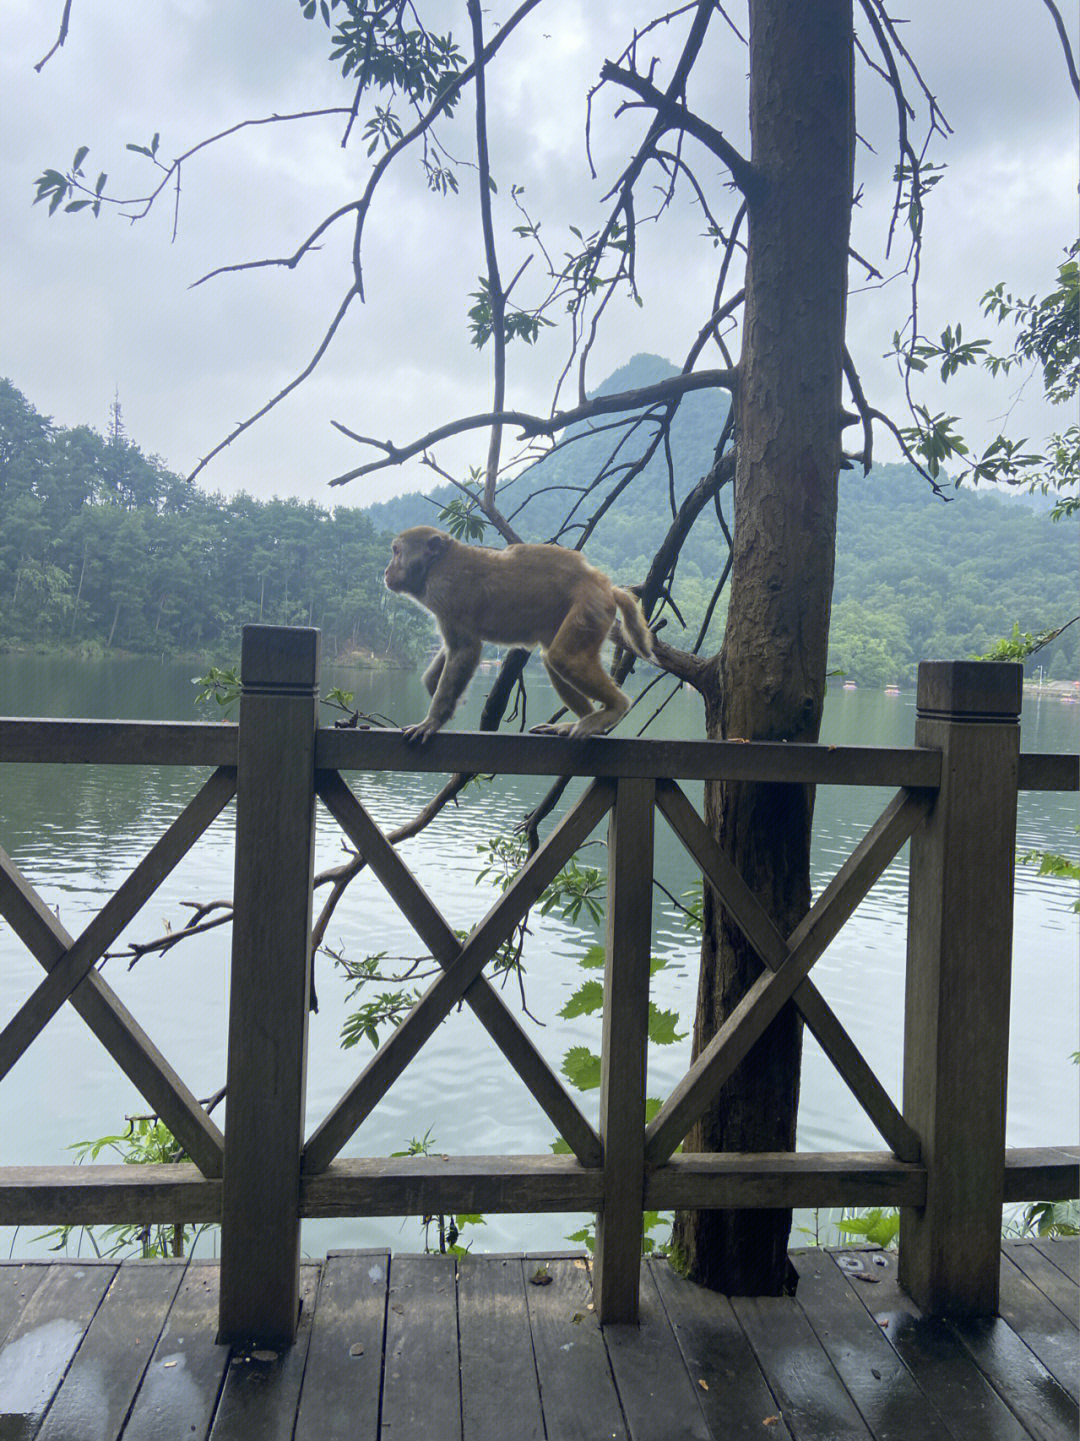 今天上午我们61了到69黔灵山公园,公园里很多猴子92,很野61